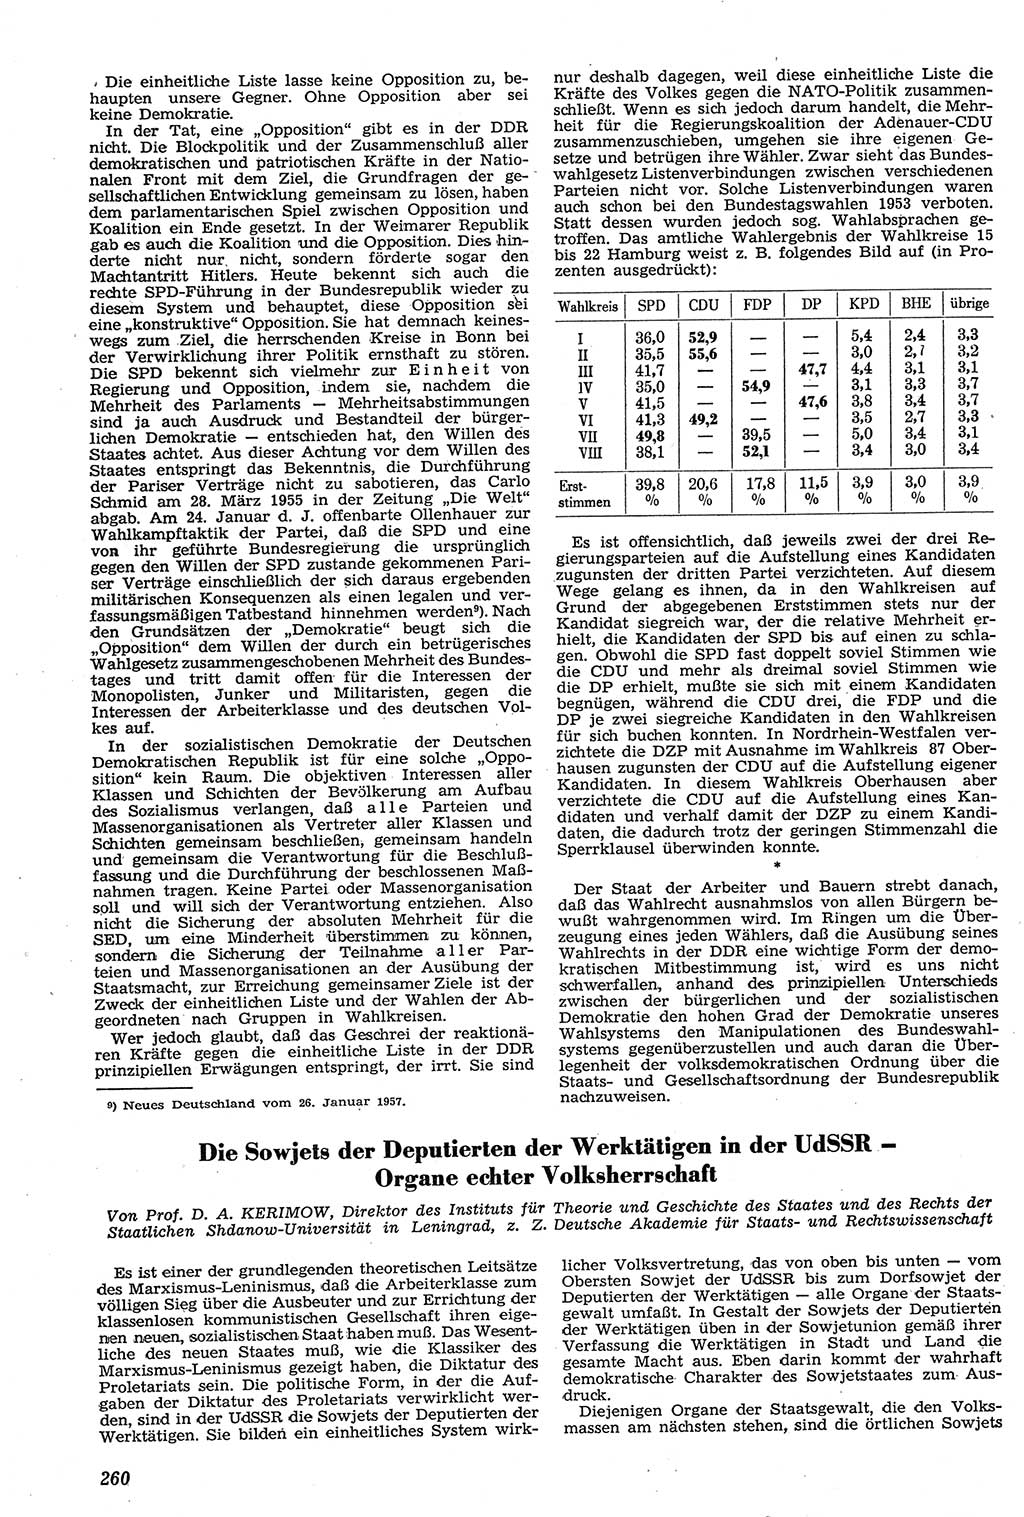 Neue Justiz (NJ), Zeitschrift für Recht und Rechtswissenschaft [Deutsche Demokratische Republik (DDR)], 11. Jahrgang 1957, Seite 260 (NJ DDR 1957, S. 260)